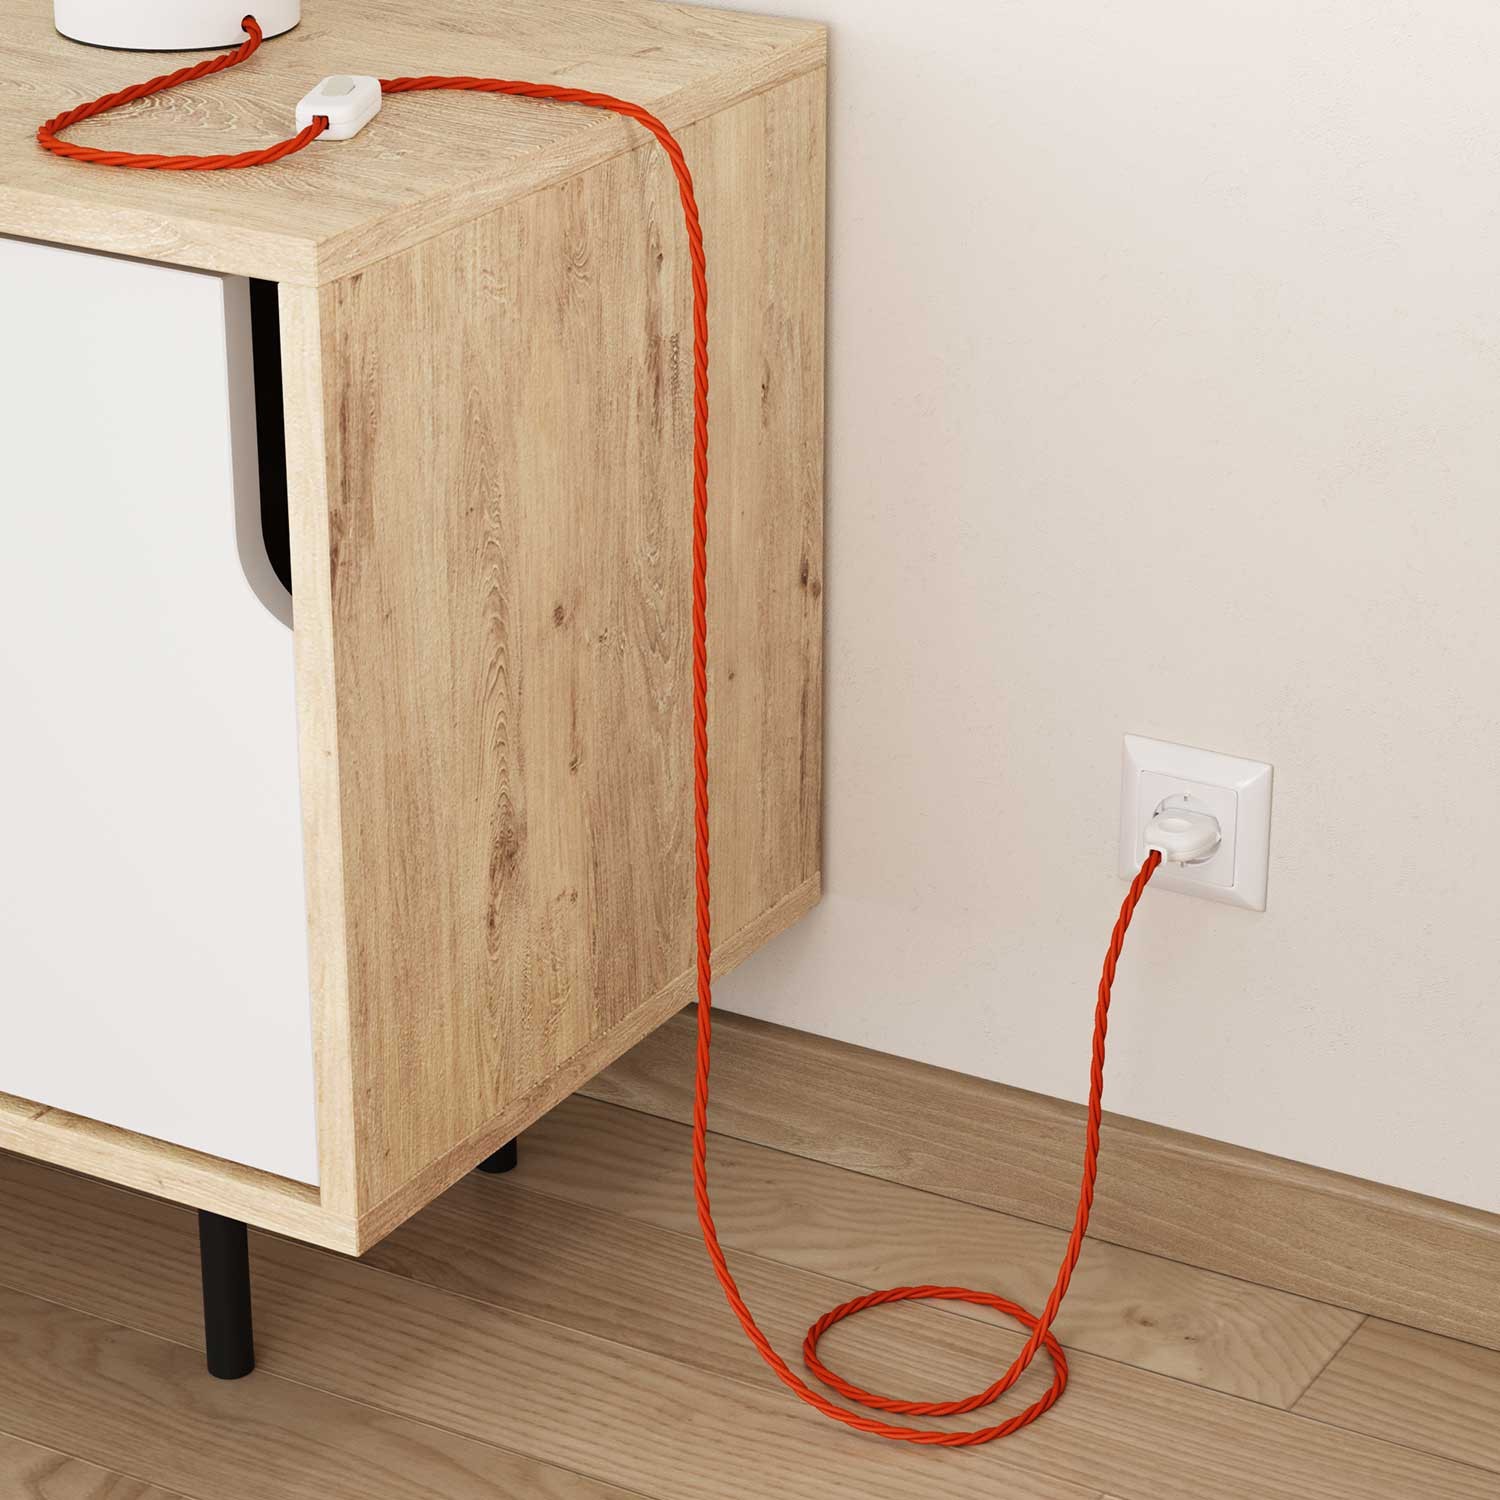 Elektrisches Kabel geflochten überzogen mit Textil-Seideneffekt Einfarbig Orange TM15